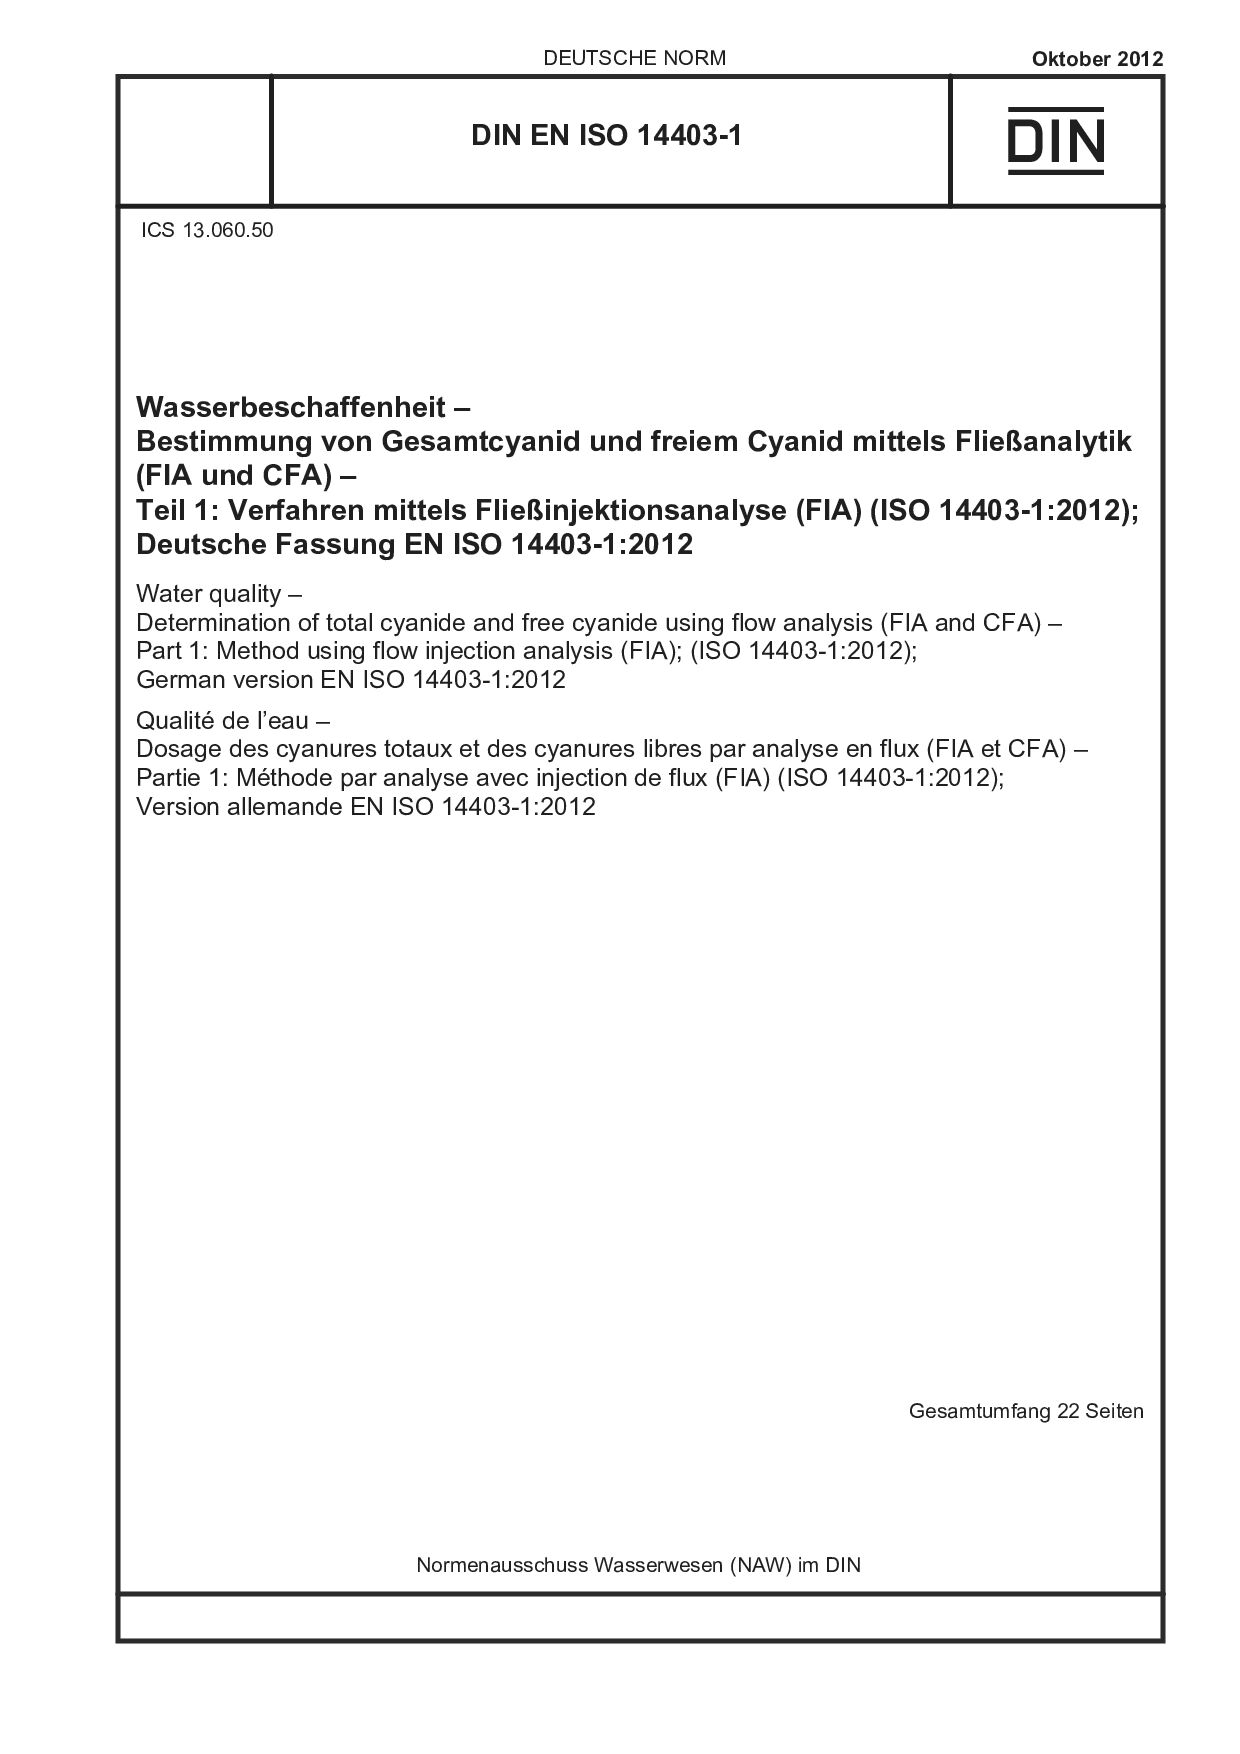 DIN EN ISO 14403-1:2012封面图